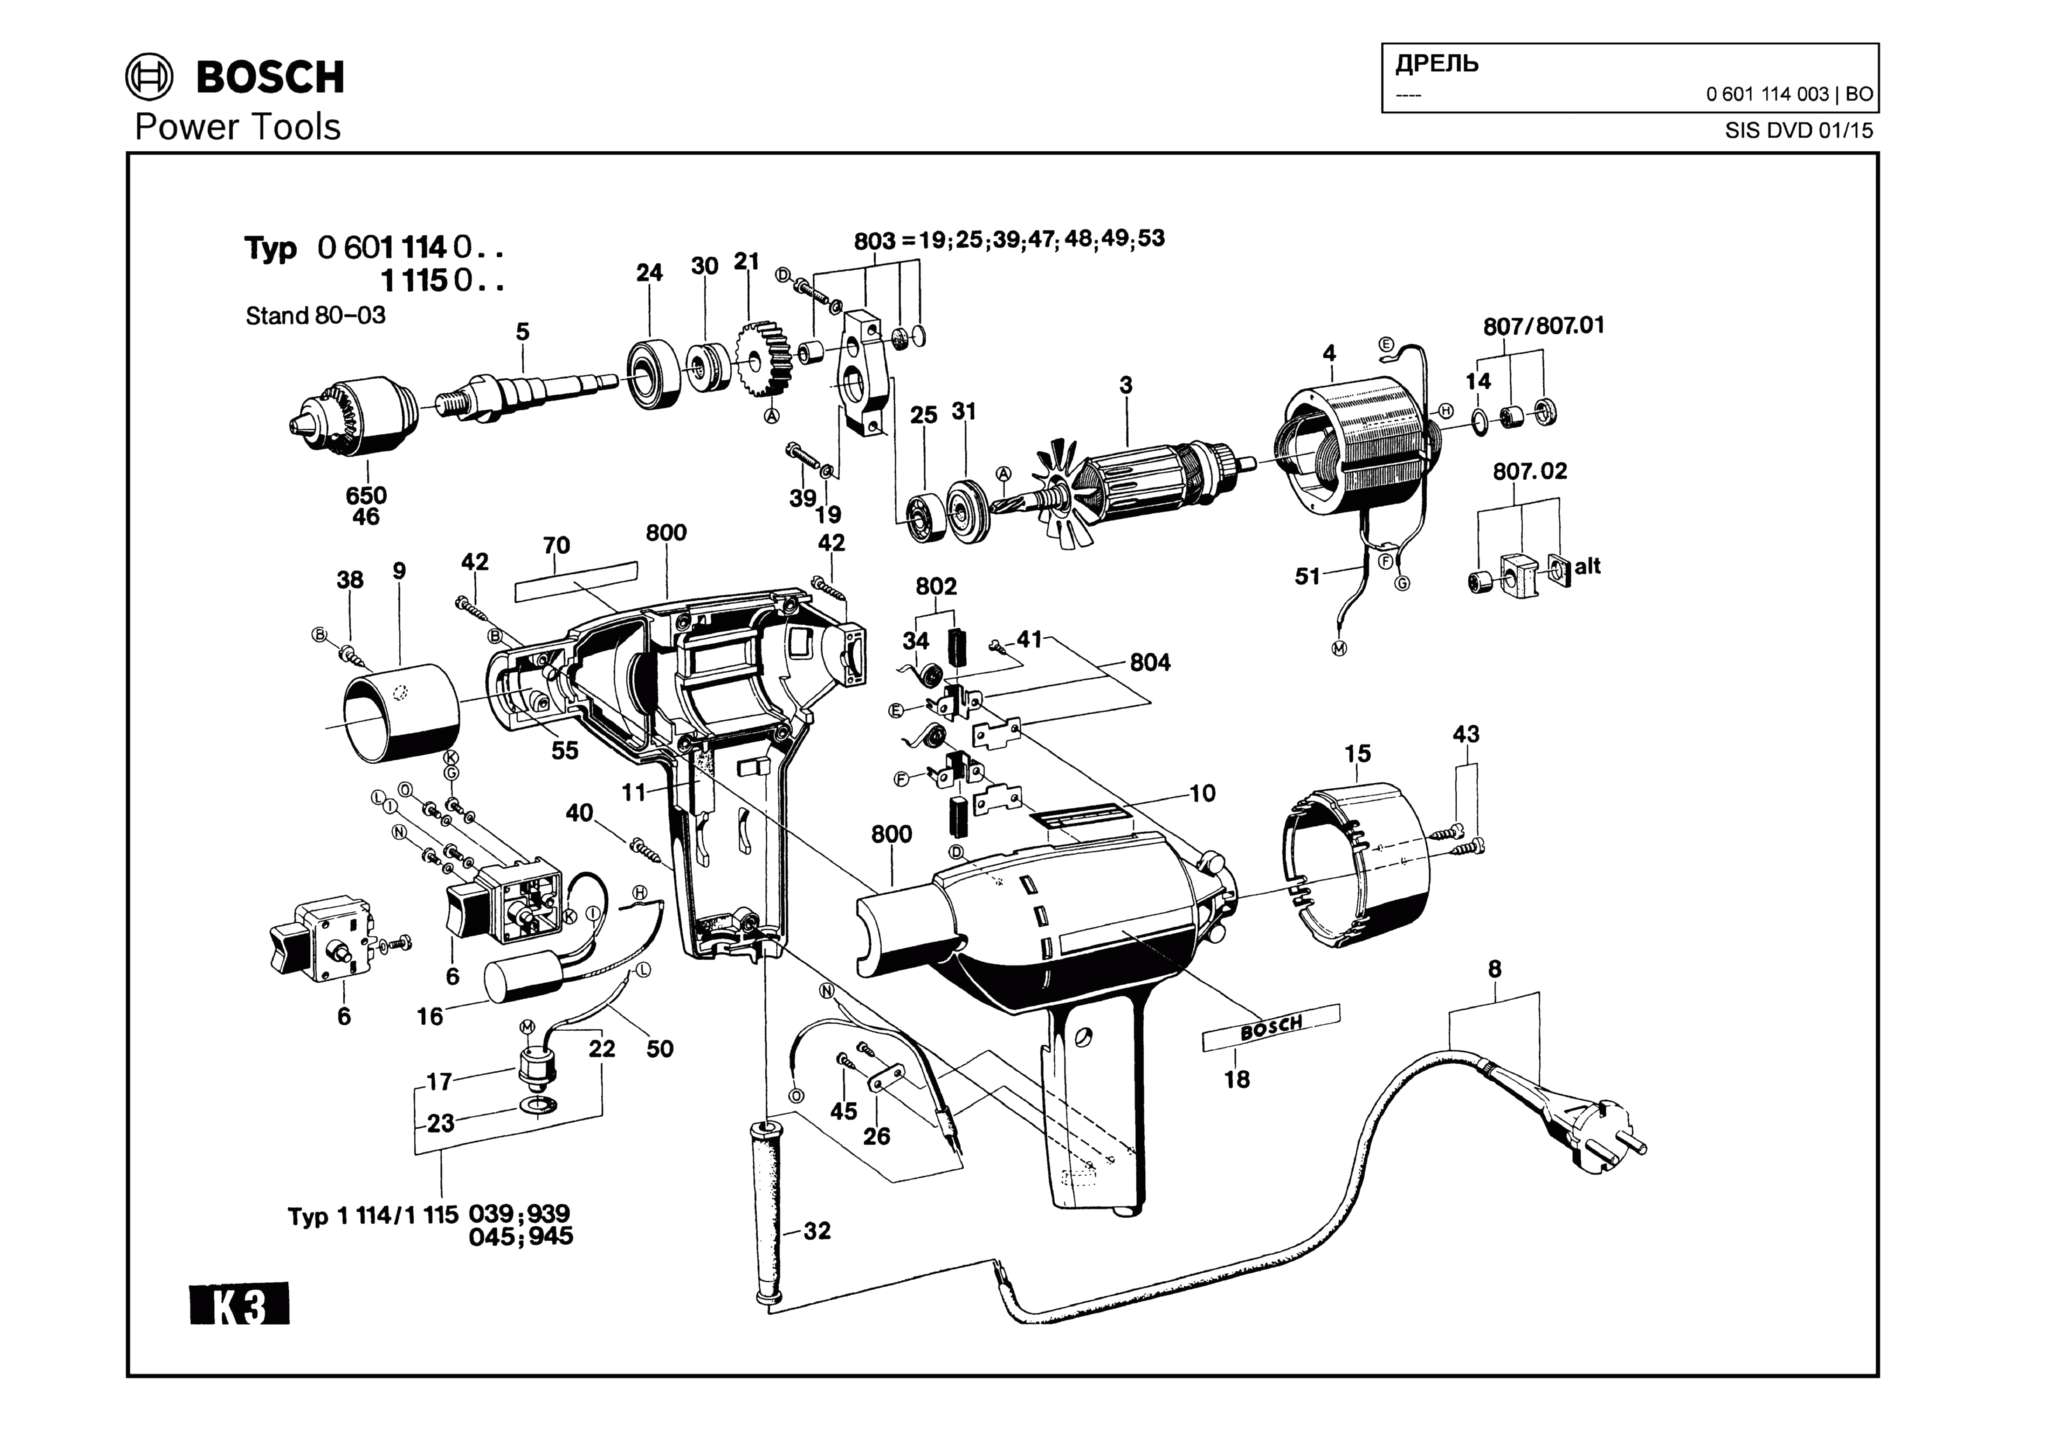 Запчасти, схема и деталировка Bosch (ТИП 0601114003)